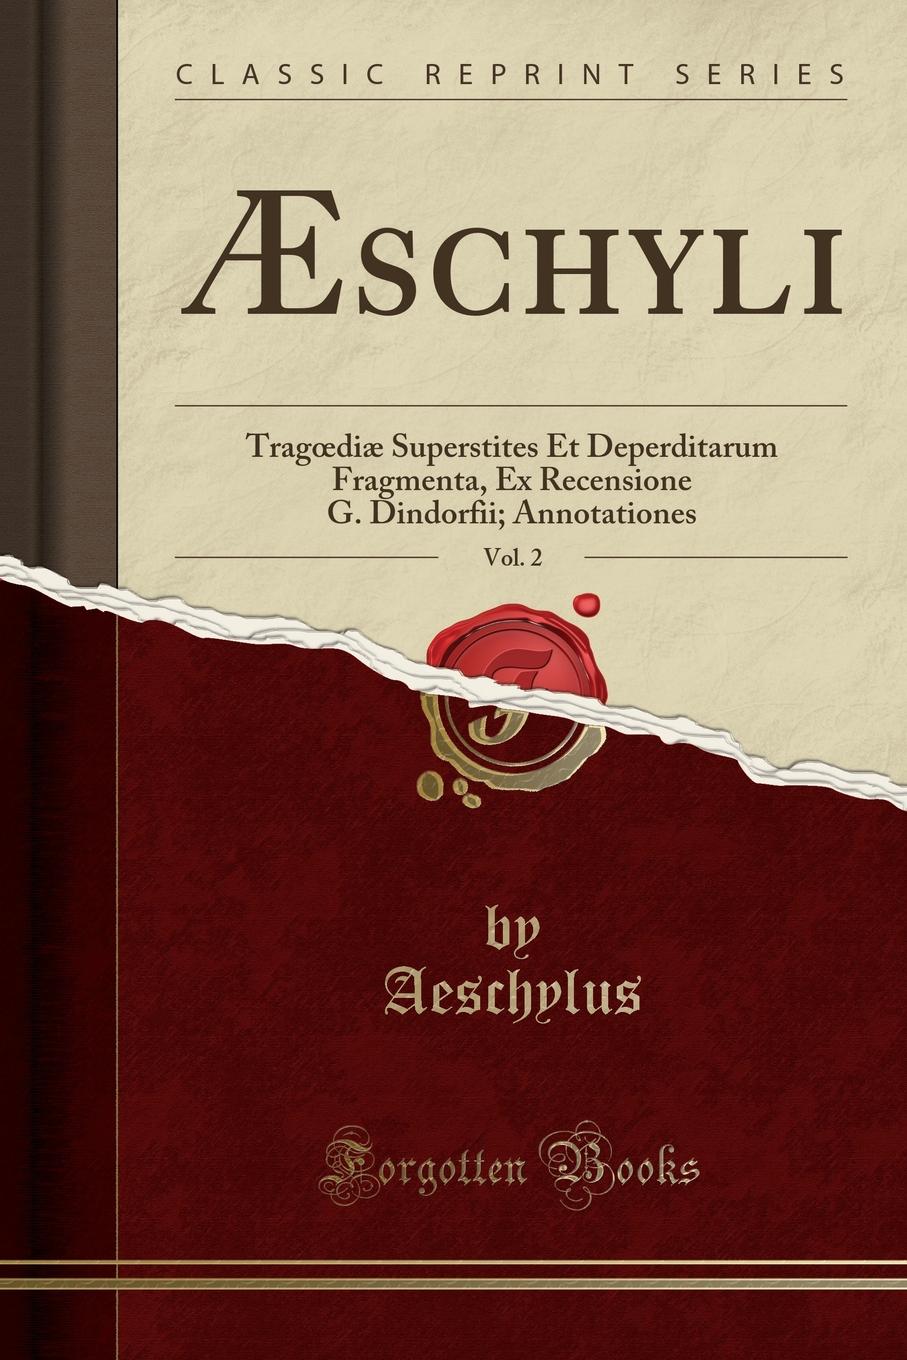 AEschyli, Vol. 2. Tragoediae Superstites Et Deperditarum Fragmenta, Ex Recensione G. Dindorfii; Annotationes (Classic Reprint)